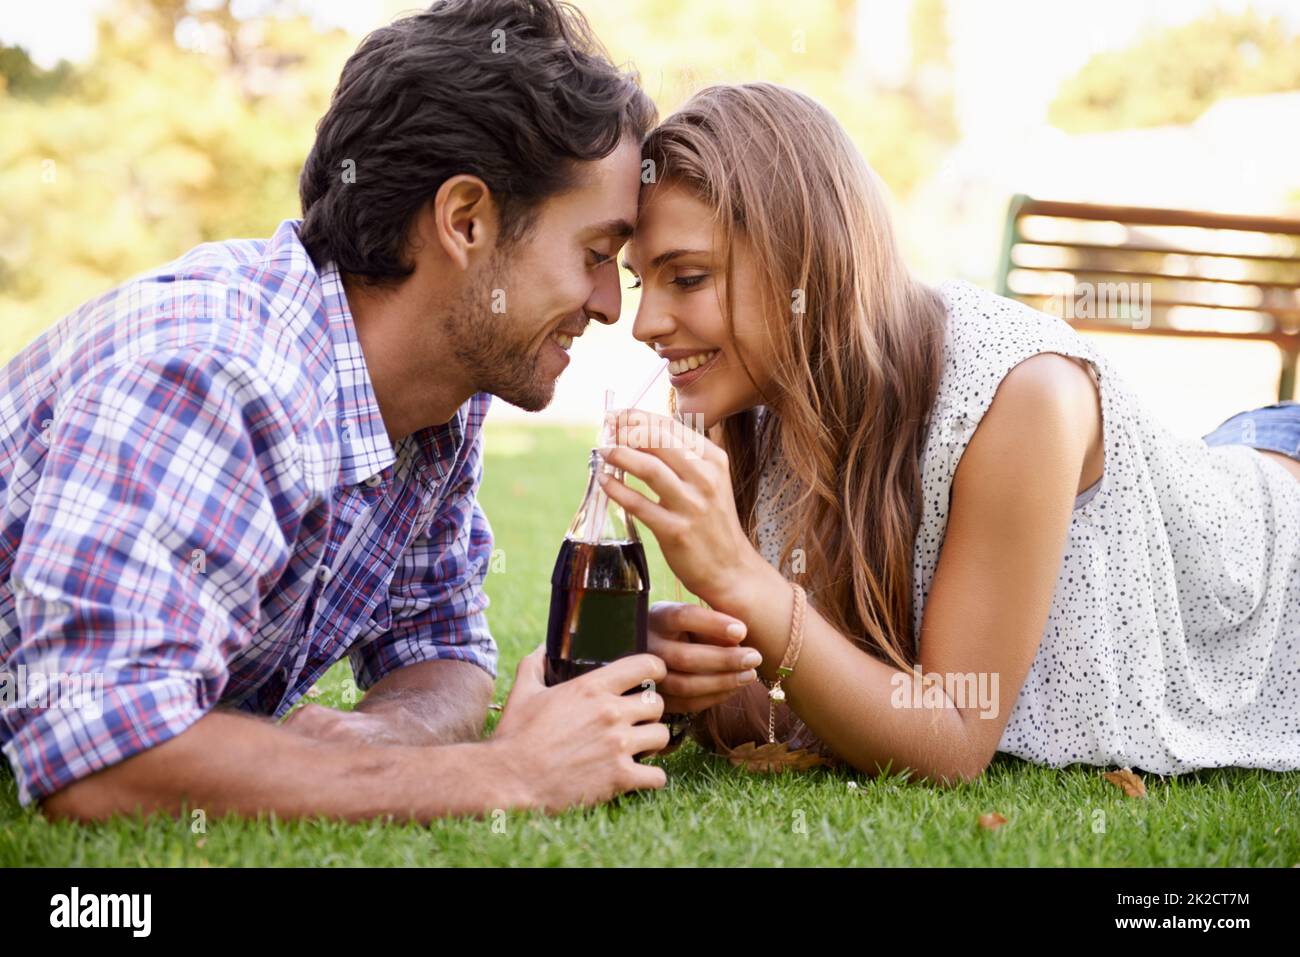 Junge Liebe. Ein glückliches junges Paar, das im Park zusammen Cola nippt. Stockfoto